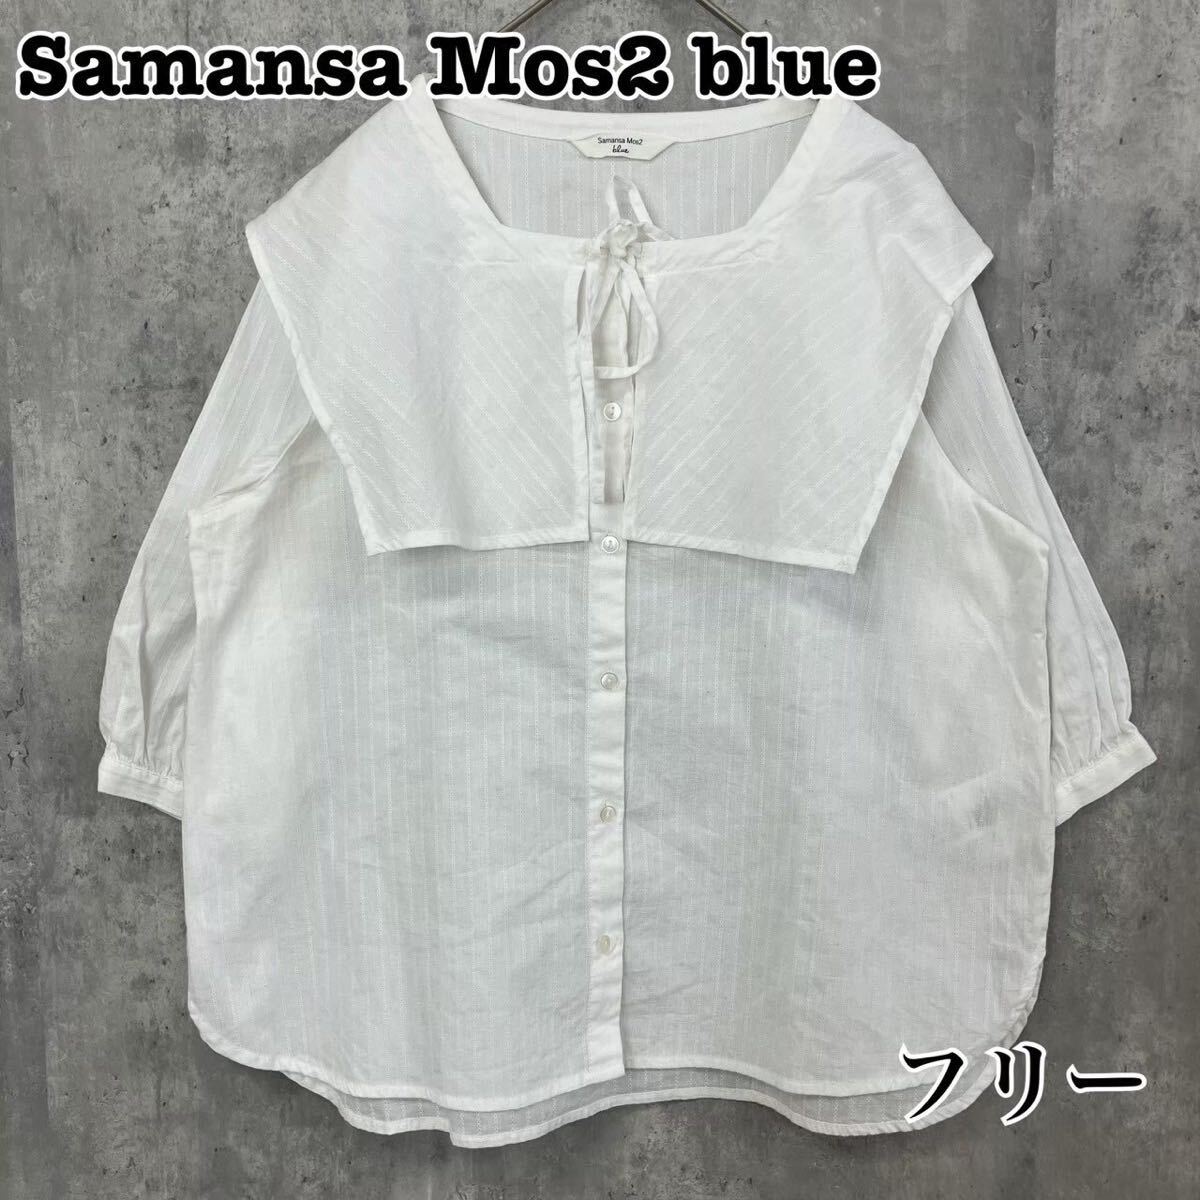 SamansaMos2 blue サマンサモスモスブルー ボックスカラー ブラウス フリー セーラー襟 送料無料_画像1